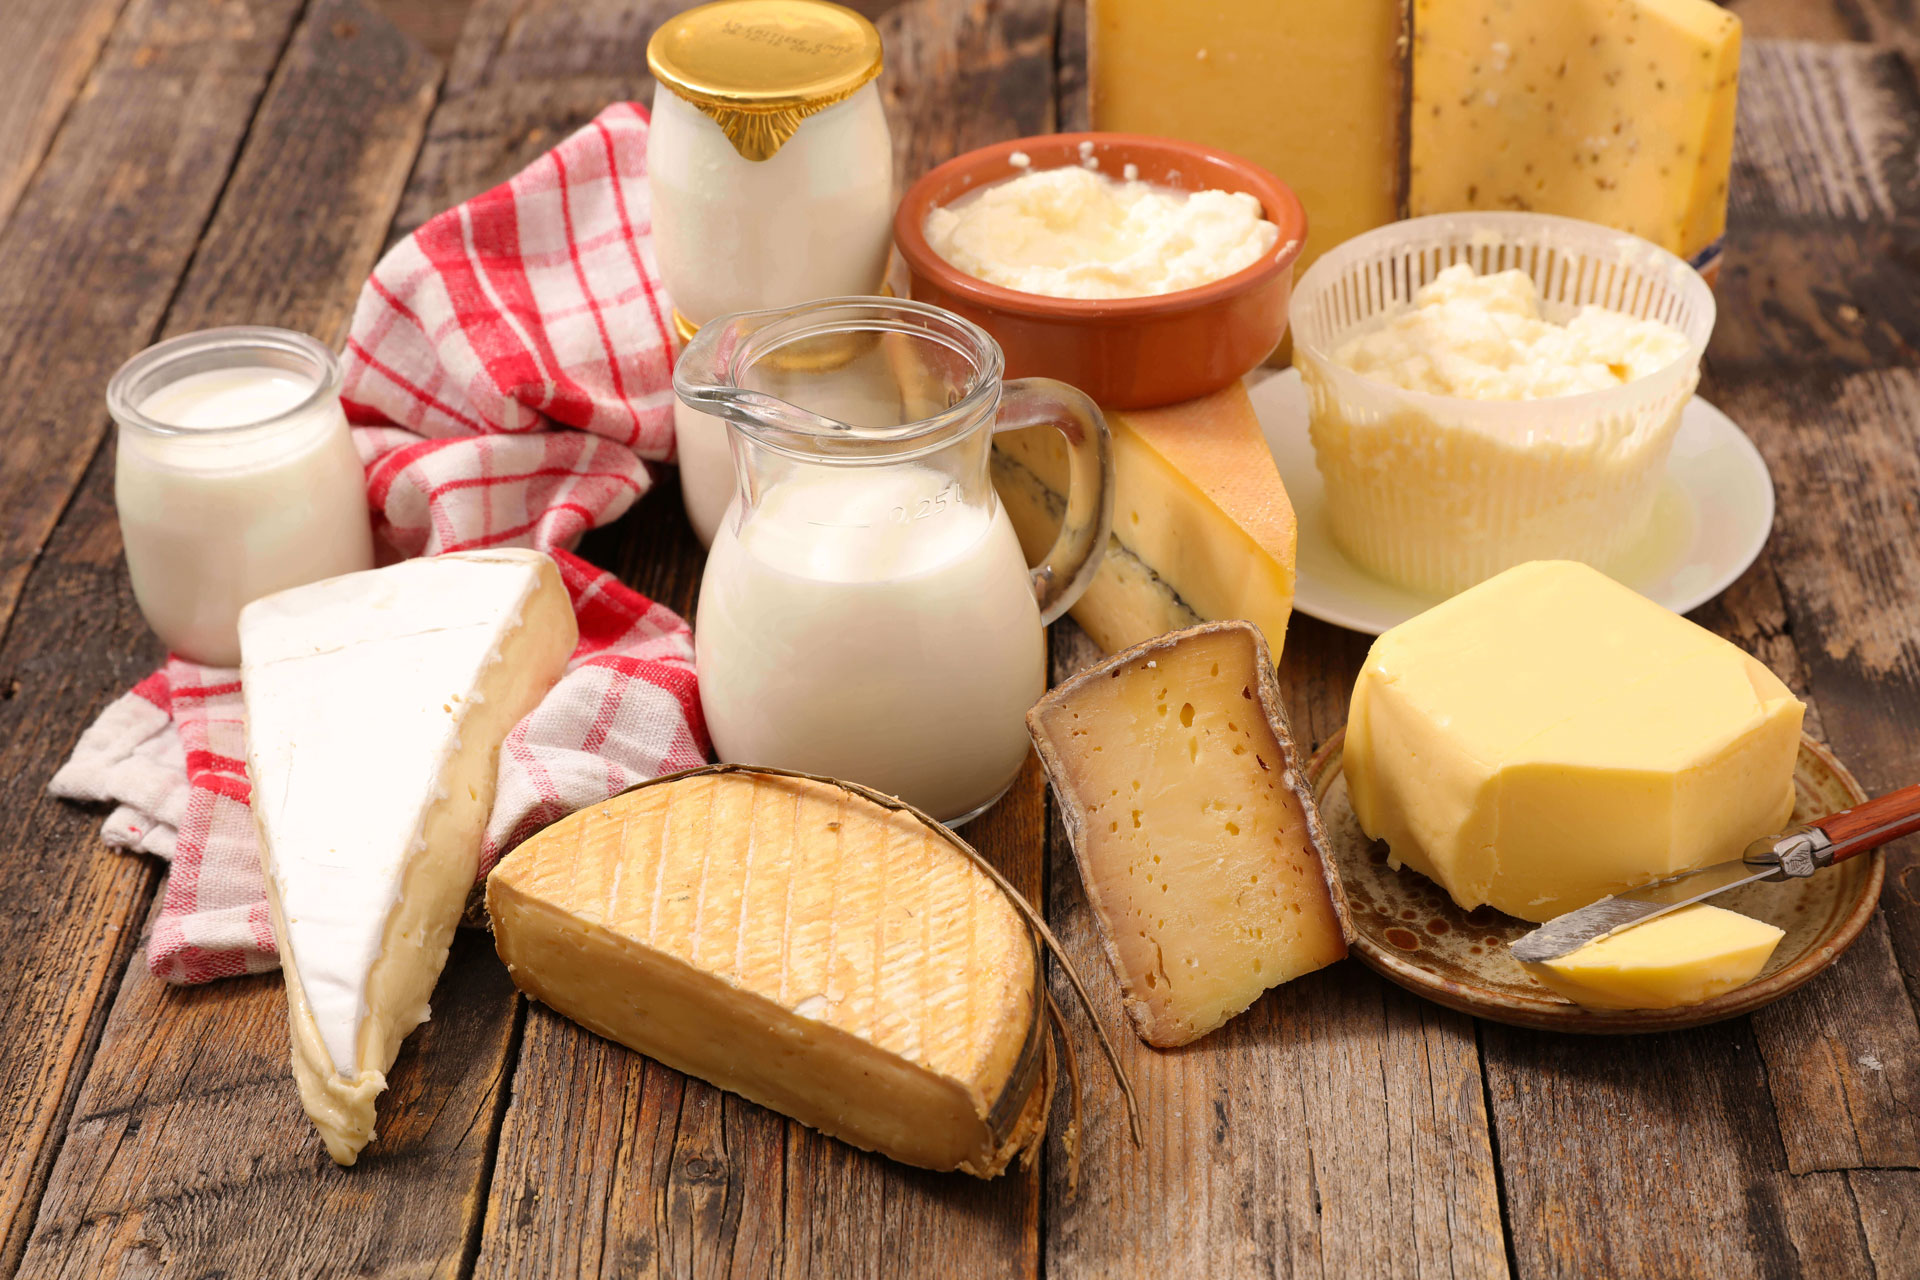 Sữa và các chế phẩm từ sữa người bệnh cần hạn chế